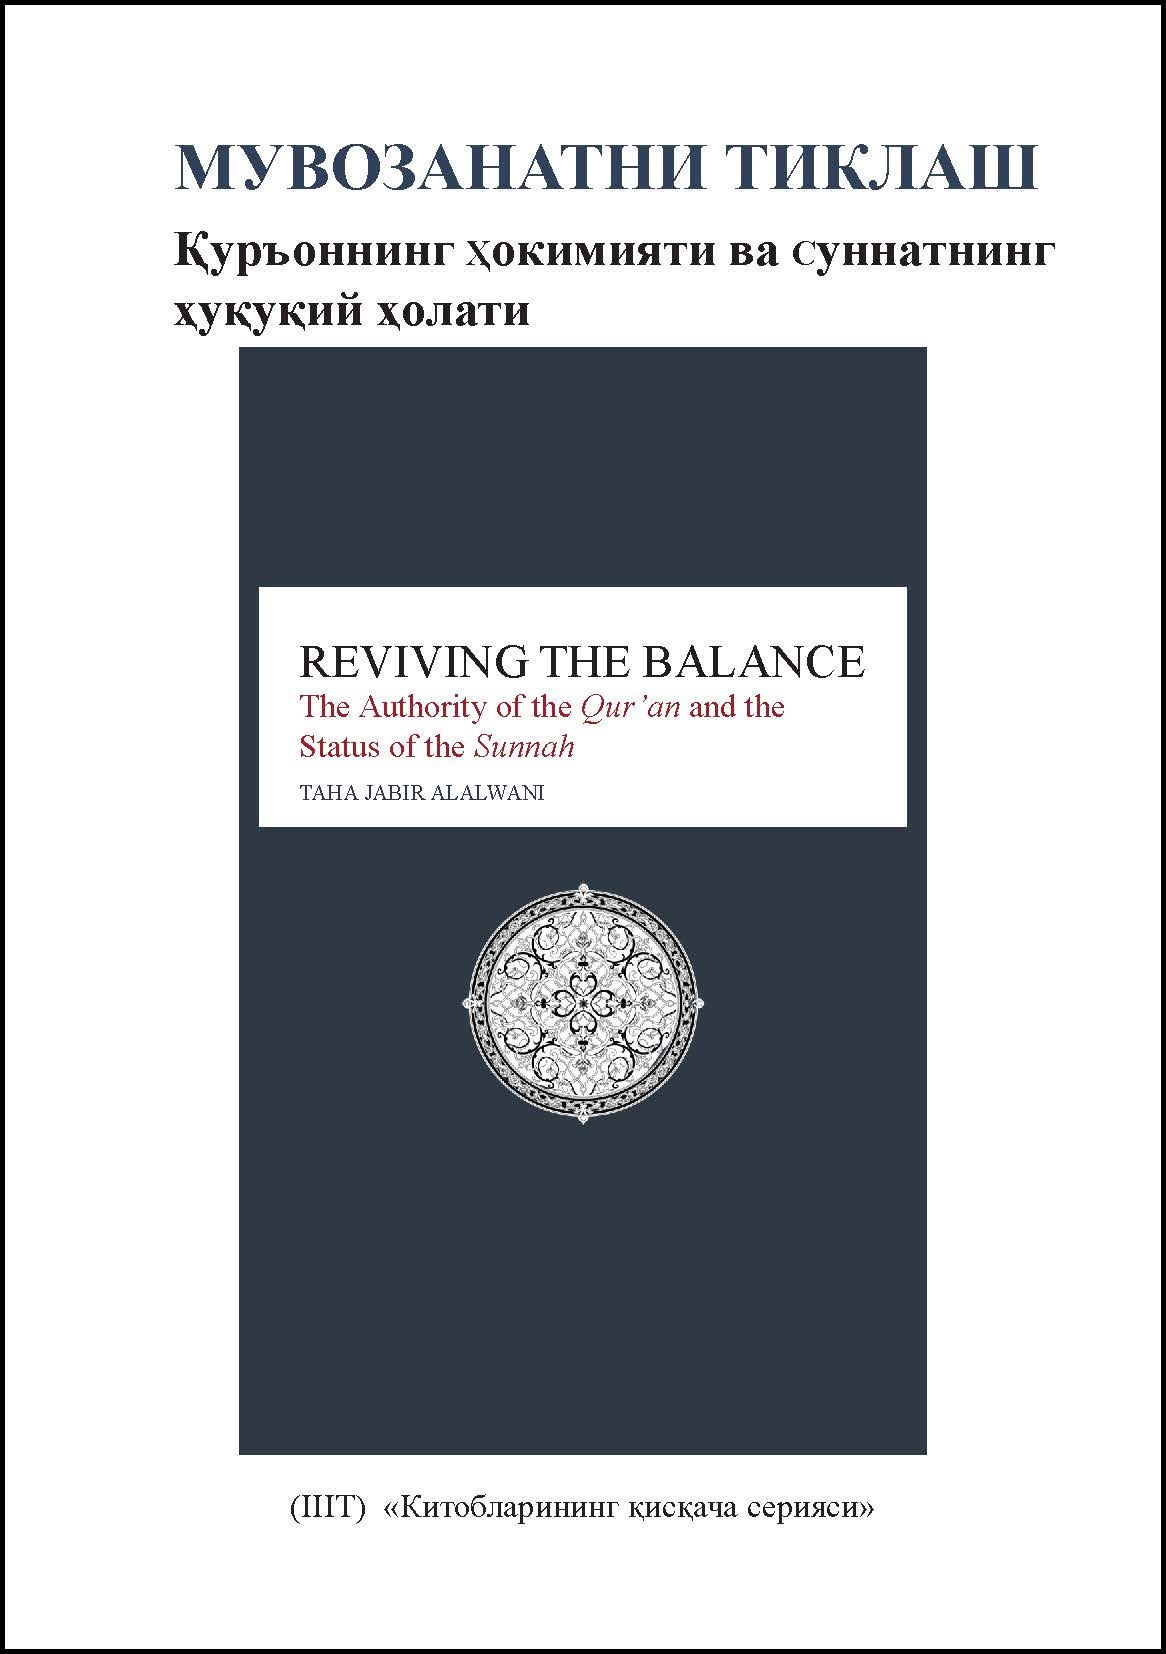 Uzbek: Китобларининг қисқача сериялари: Мувозанатни тиклаш: Қуръоннинг ҳокимияти ва суннатнинг ҳуқуқий ҳолати (Book-in-Brief: Reviving the Balance: The Authority of the Qur’an and the Status of the Sunnah)